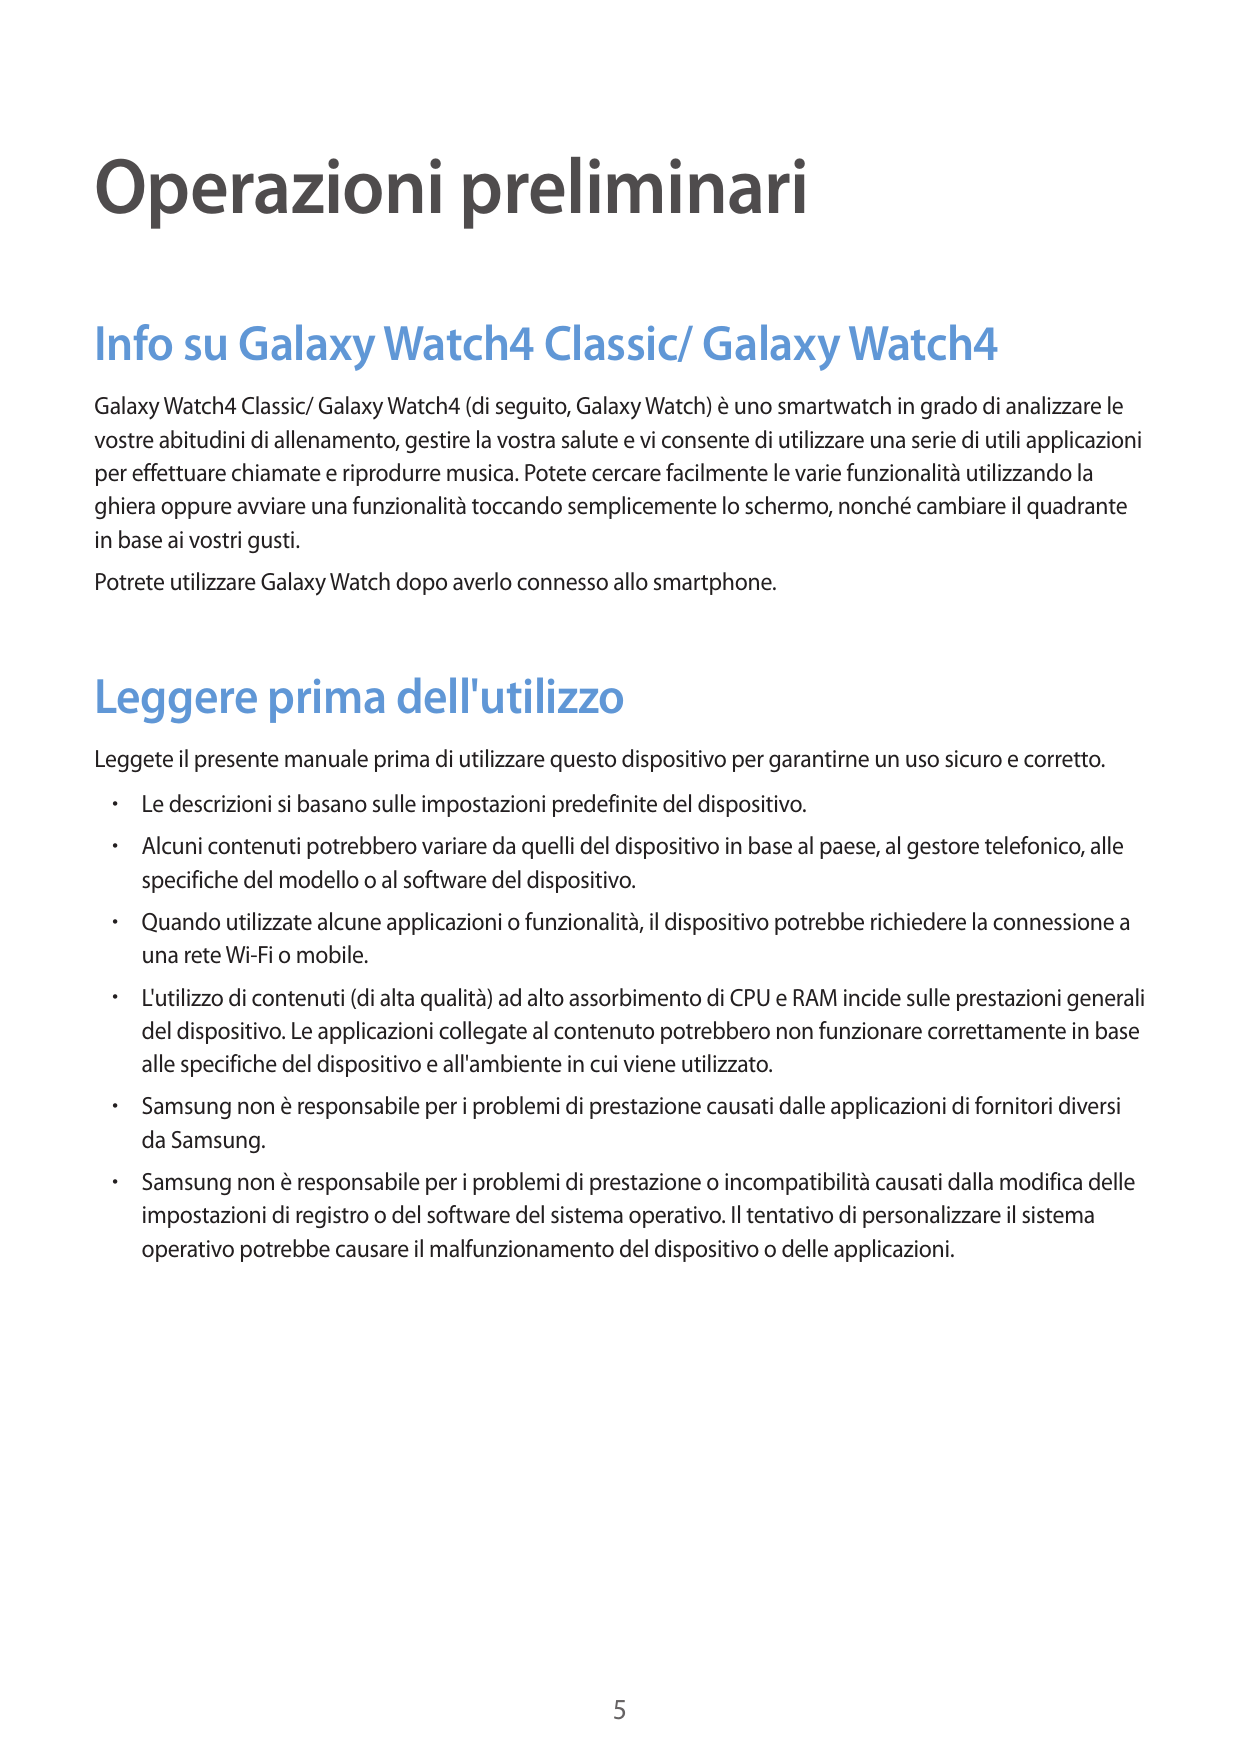 Operazioni preliminariInfo su Galaxy Watch4 Classic/ Galaxy Watch4Galaxy Watch4 Classic/ Galaxy Watch4 (di seguito, Galaxy Watch